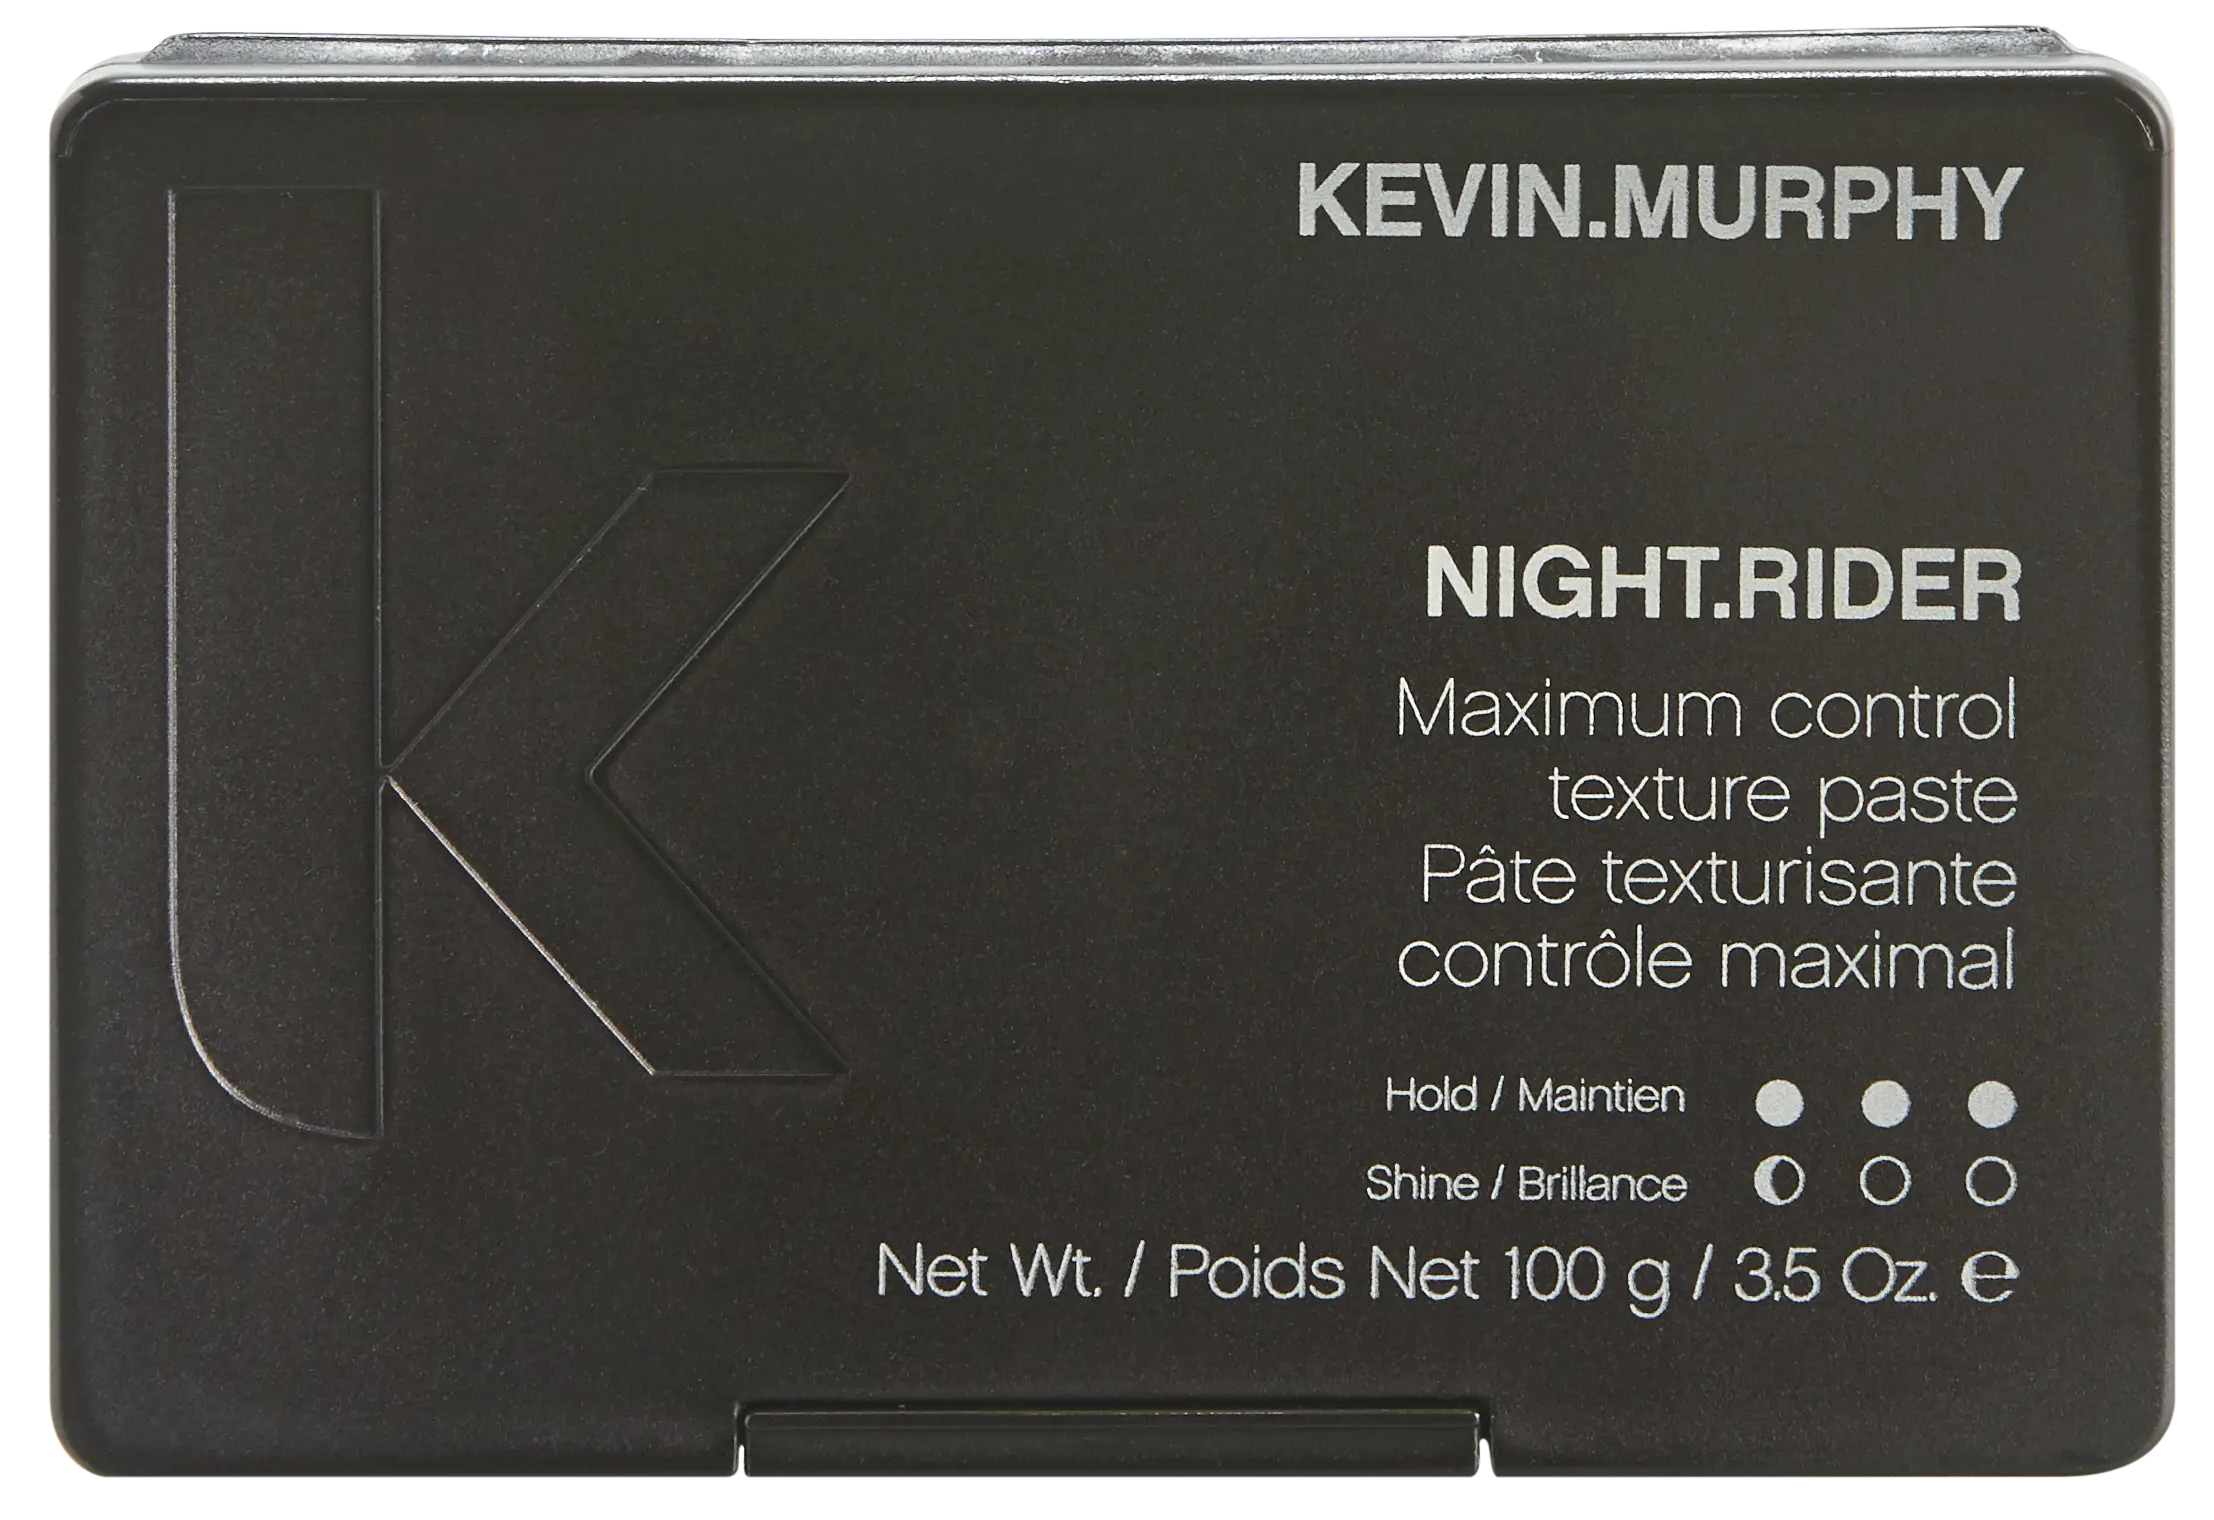 KMU189 NIGHT.RIDER 100G 03 1 copy 2